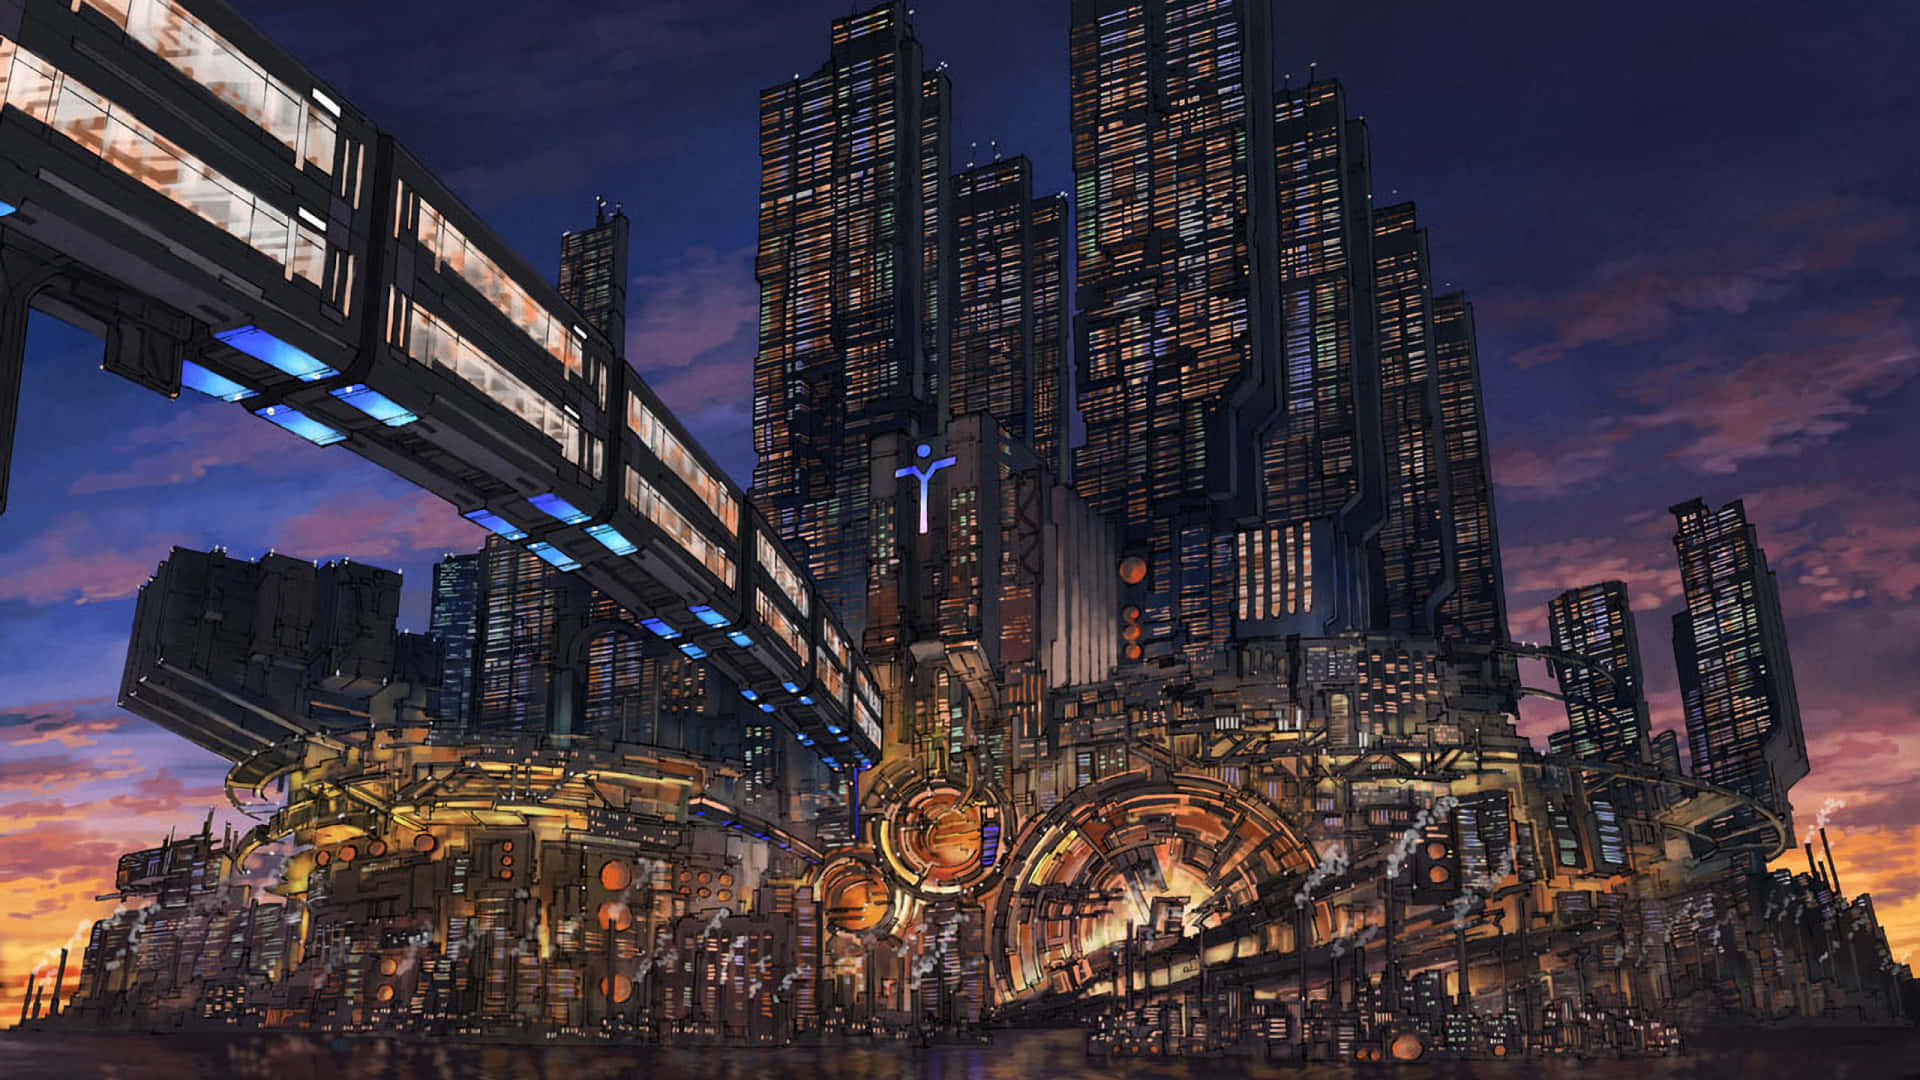 Futuristic Cyberpunk City Background